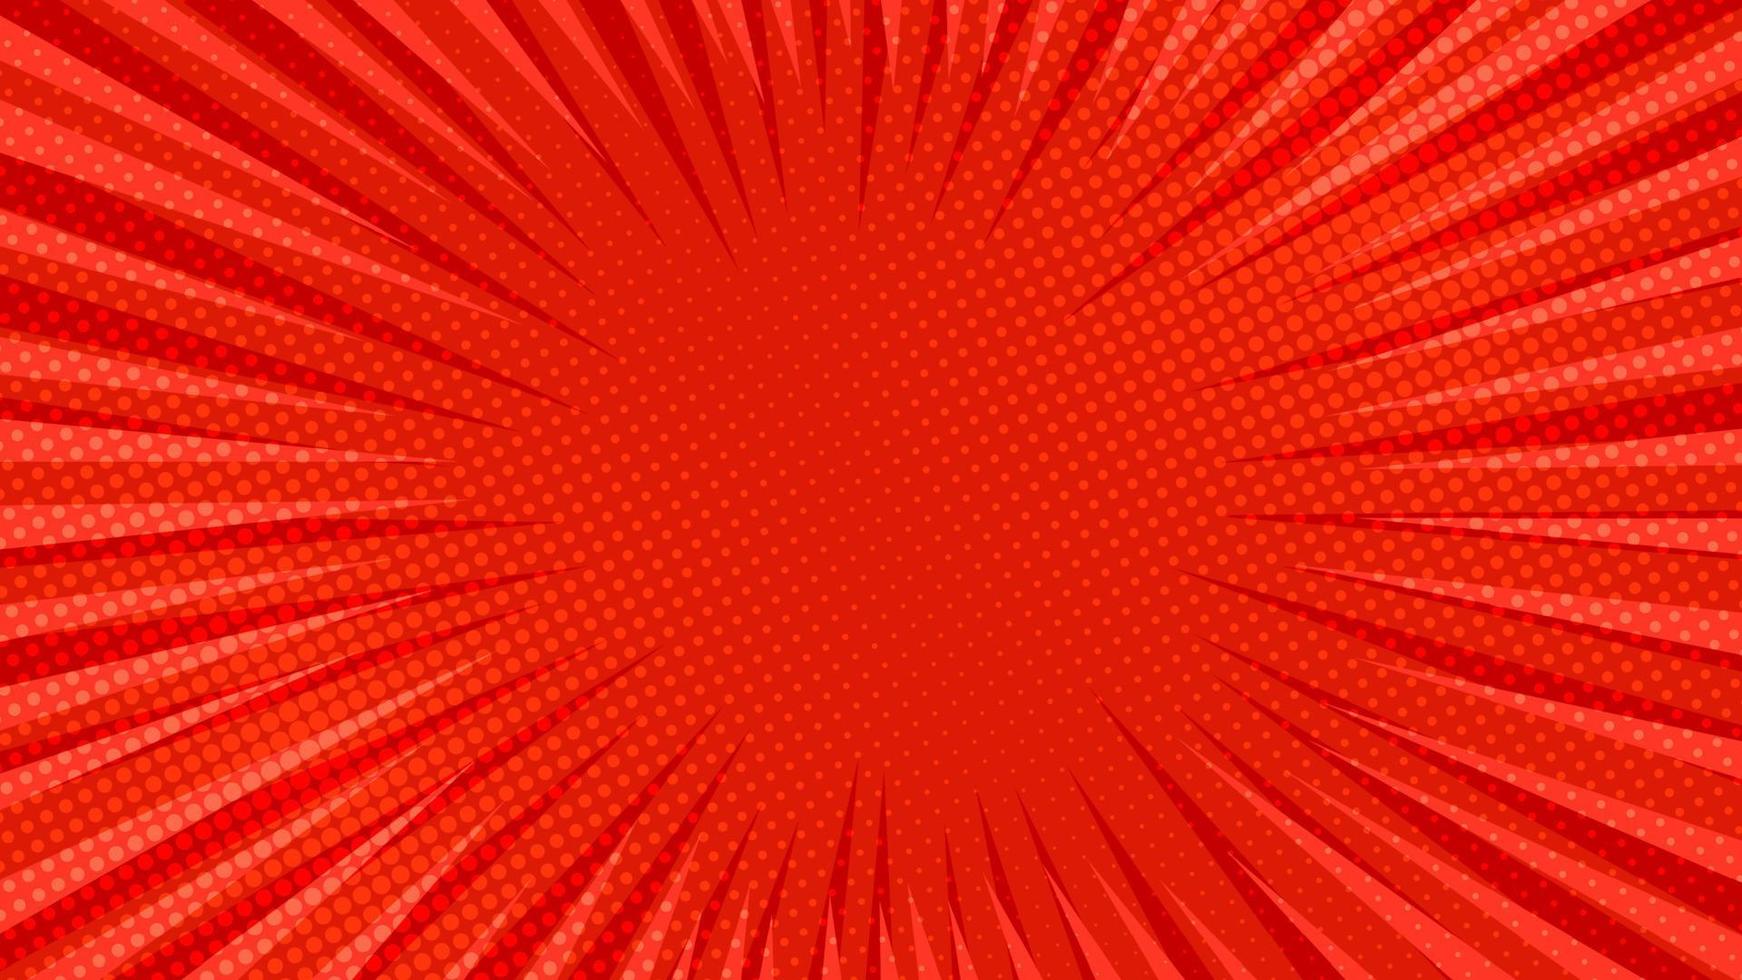 rood grappig boek bladzijde achtergrond in knal kunst stijl met leeg ruimte. sjabloon met stralen, dots en halftone effect textuur. vector illustratie